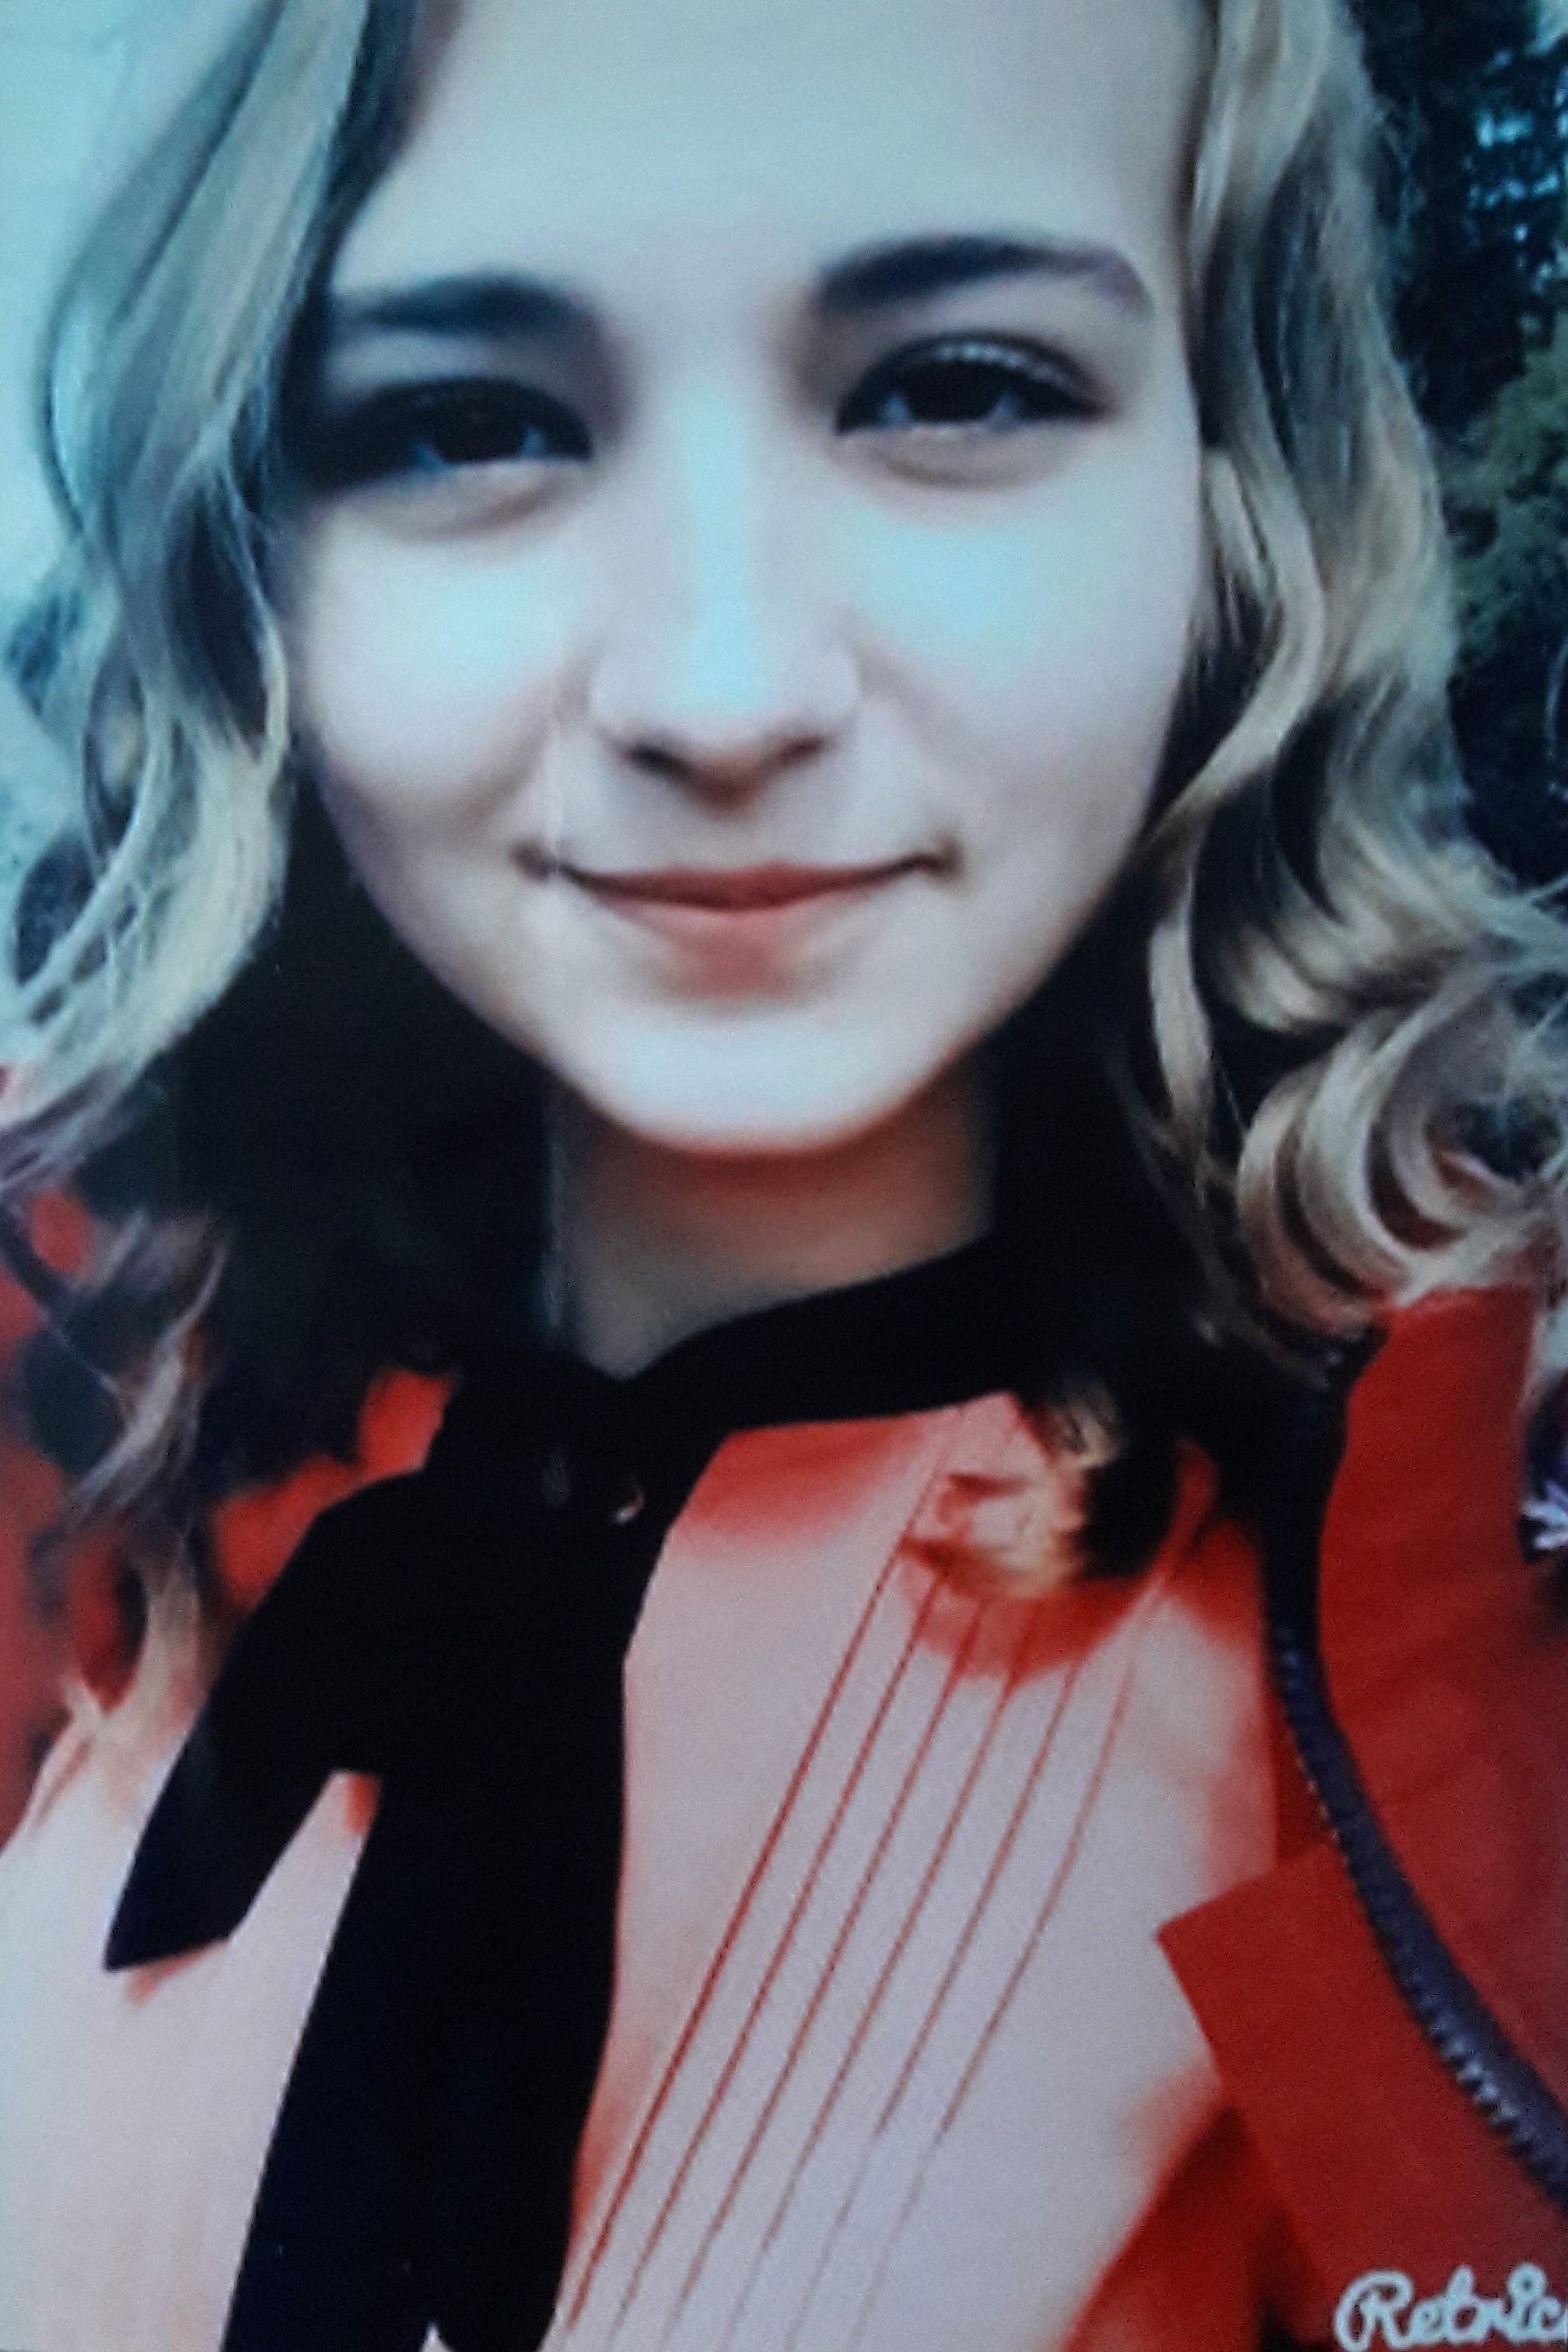 16-ти річна студентка Виноградівського коледжу МДУ Анжеліка Побережнюк  страждає двобічною сенсоневральною приглуховатістю та поьребує встановлення кохлеарних імплантів.